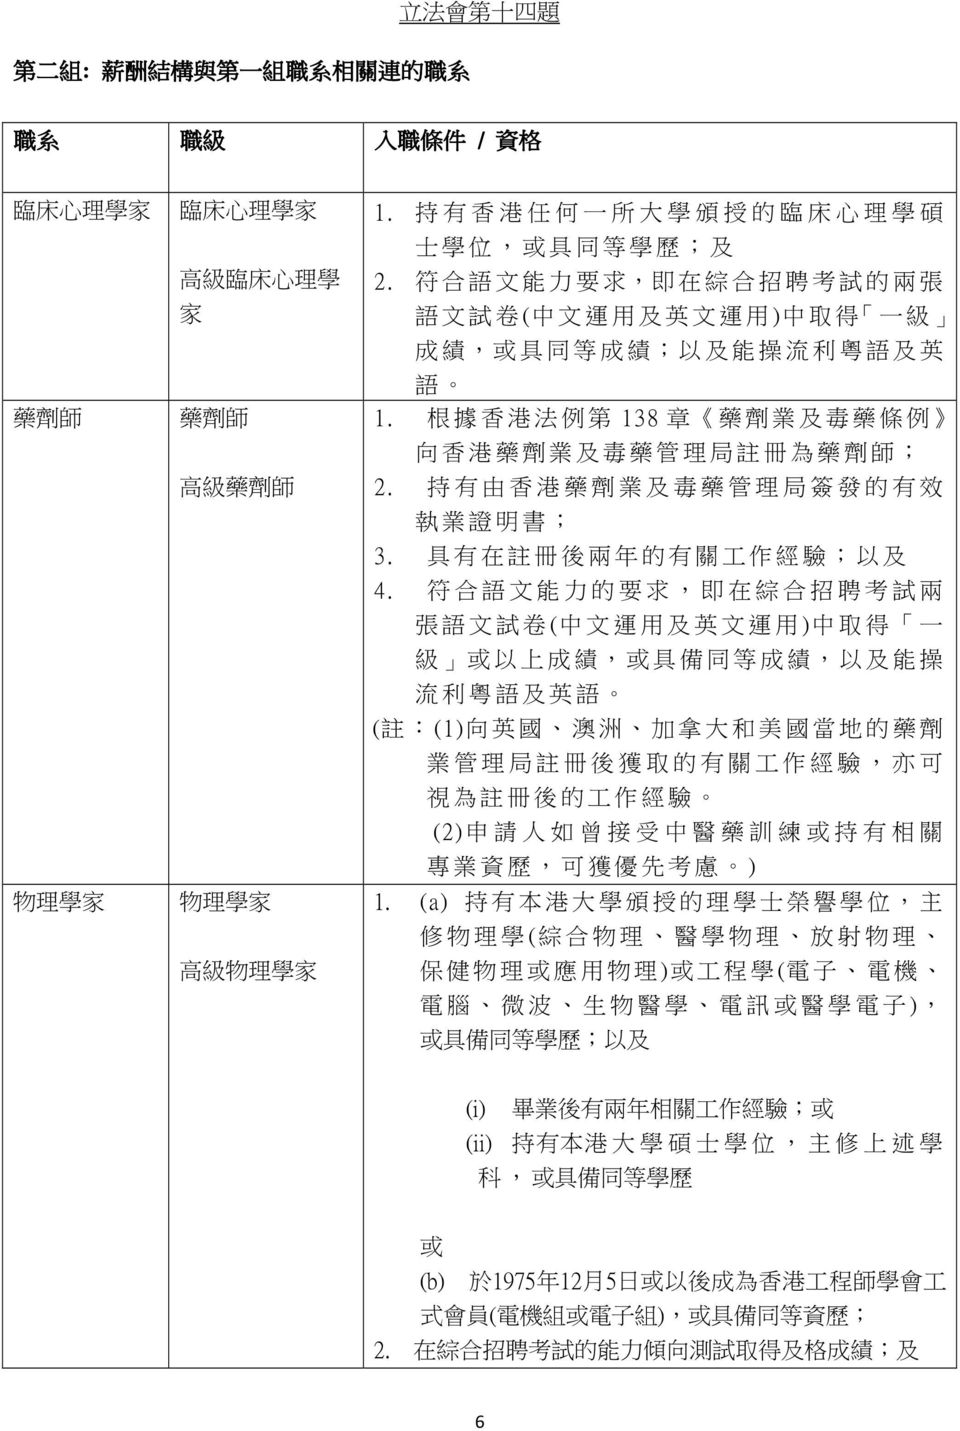 持 有 由 香 港 藥 劑 業 及 毒 藥 管 理 局 簽 發 的 有 效 執 業 證 明 書 ; 3. 具 有 在 註 冊 後 兩 年 的 有 關 工 作 經 驗 ; 以 及 4.